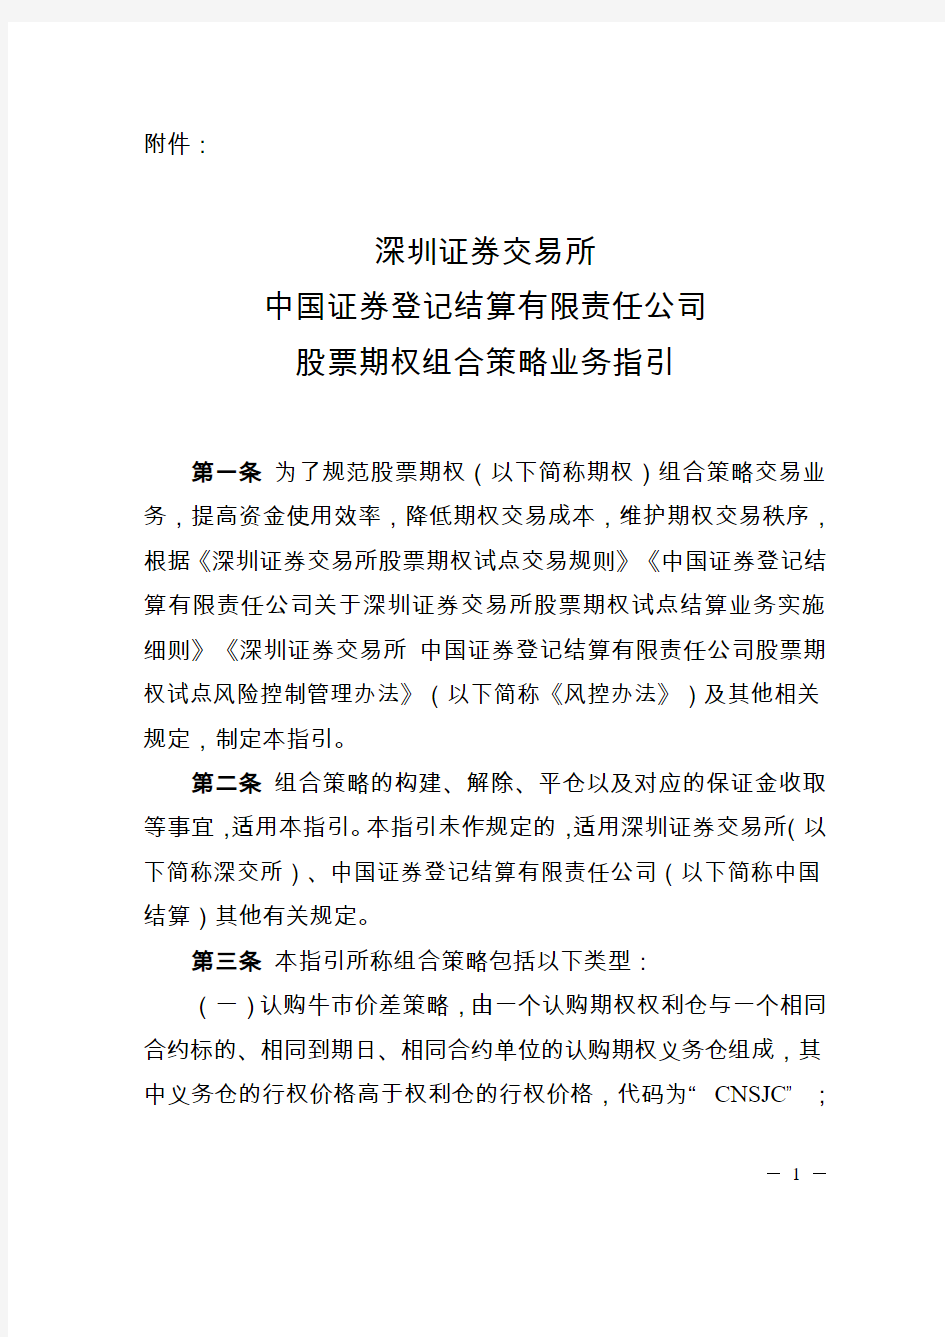 深圳证券交易所中国证券登记结算有限责任公司股票期权组合